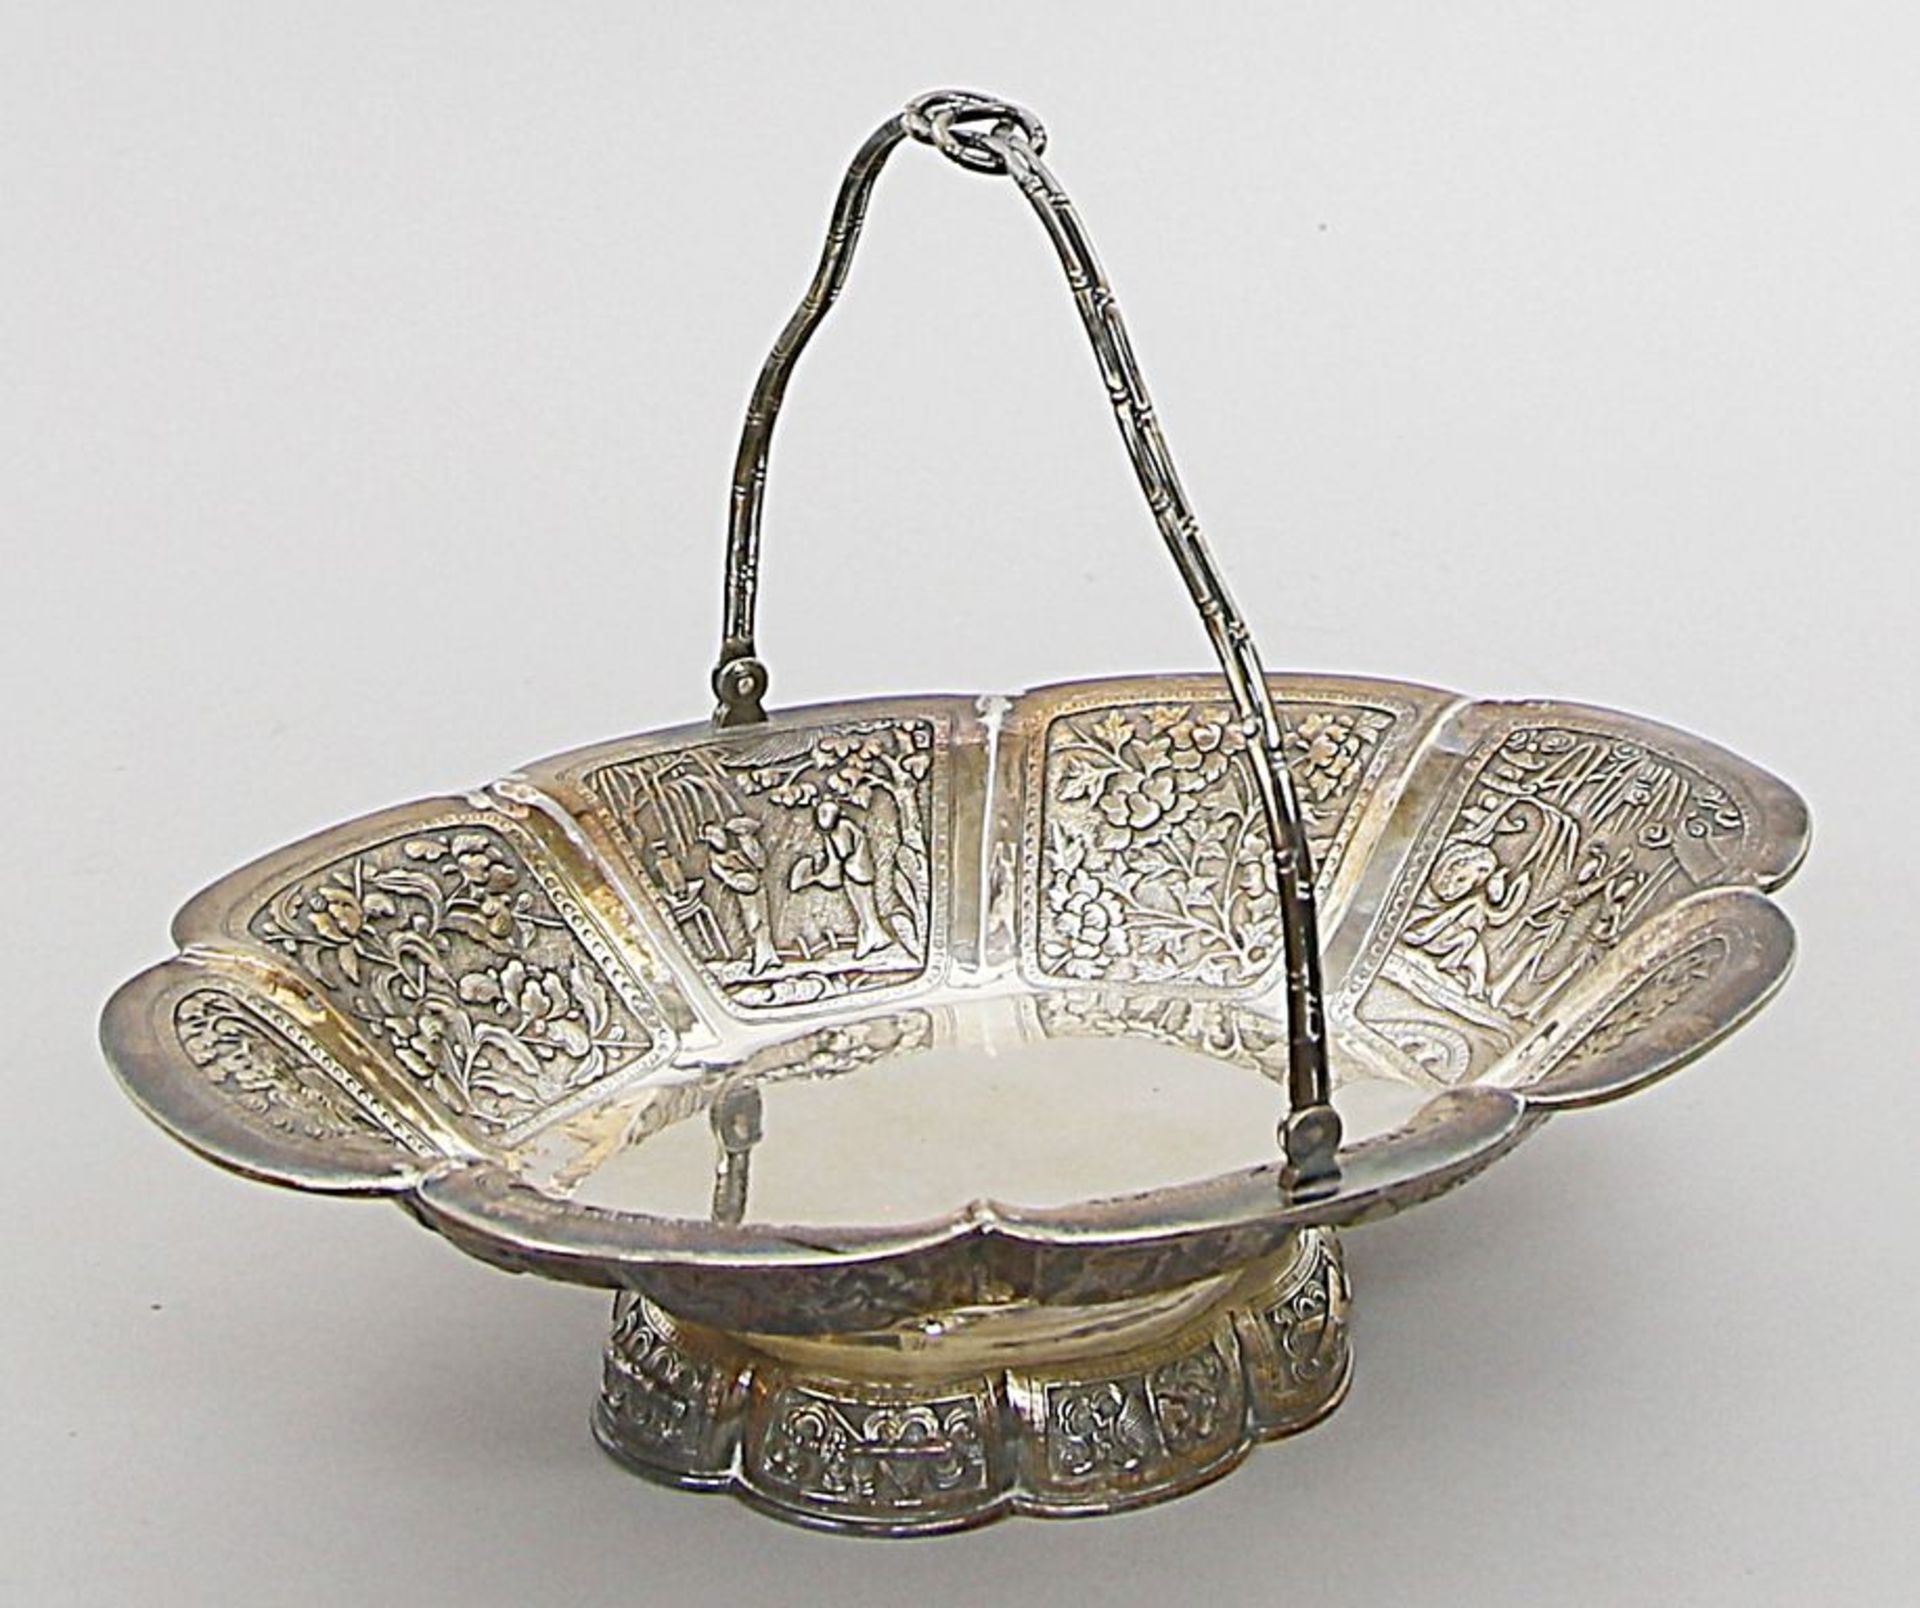 Ovale Henkelschale. Silber, 795 g. Achtpassige Wandung mit Kartuschen, darin abwechselnd